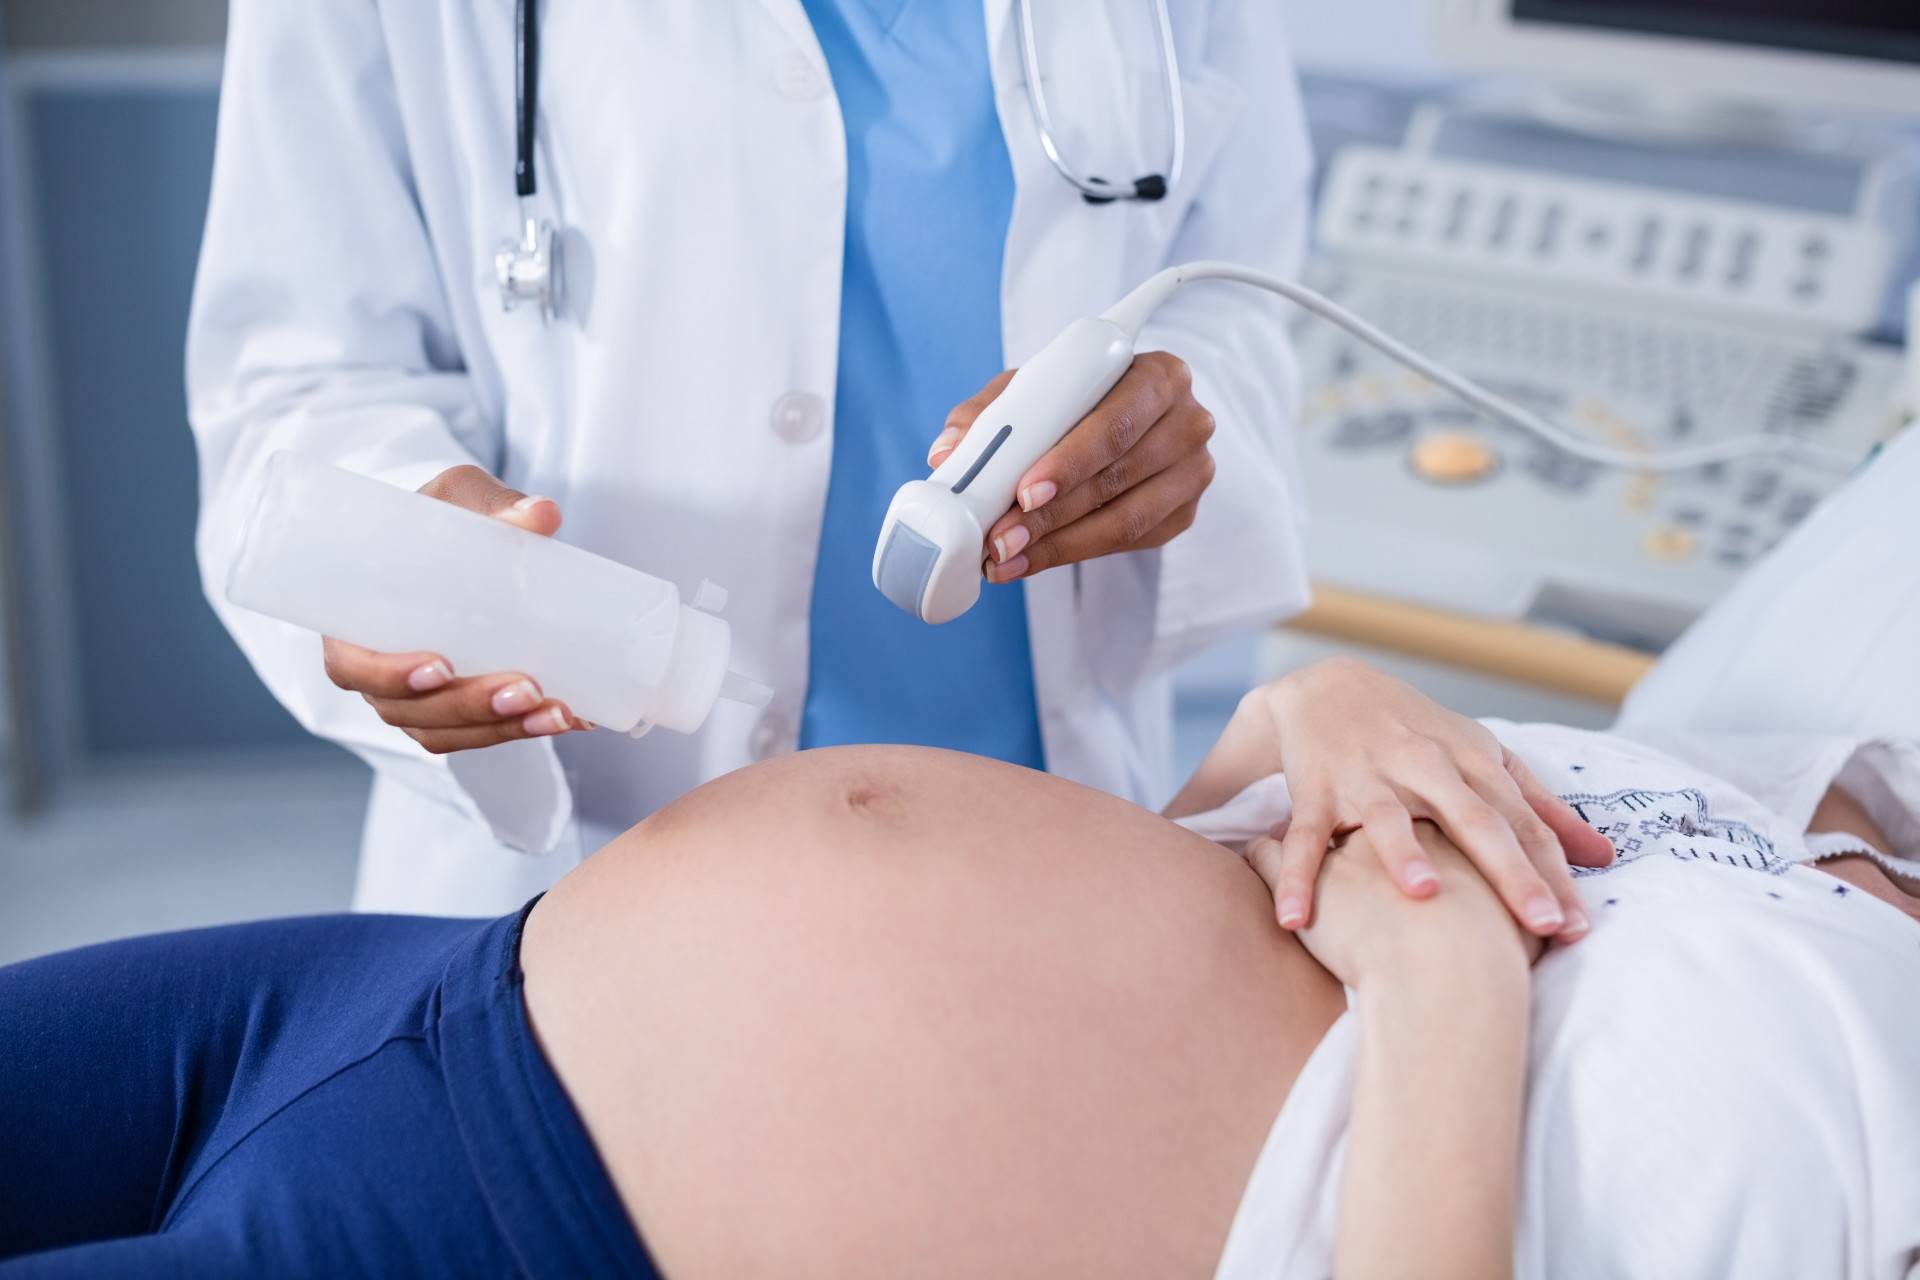 Bezpłatne badania prenatalne w ramach NFZ w ALLMEDICA w Krakowie